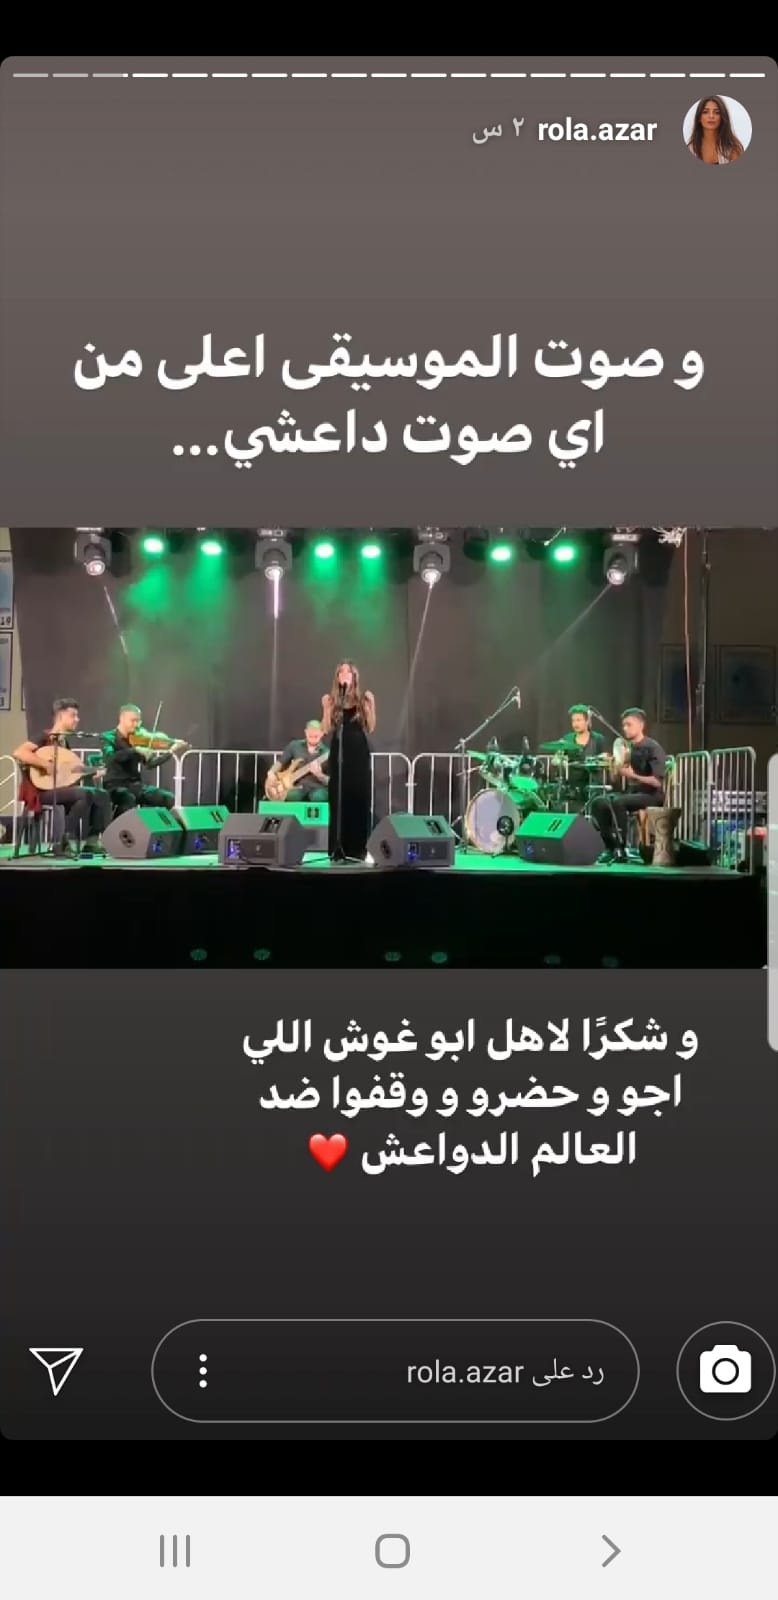 "קולה של המוזיקה גבוה יותר מכל קול של דאע"ש. תודה לתושבי אבו גוש שבאו והשתתפו ועמדו נגד תומכי דאע"ש" (ציוץ של הזמרת רולא עאזר בחשבון הטוויטר שלה)